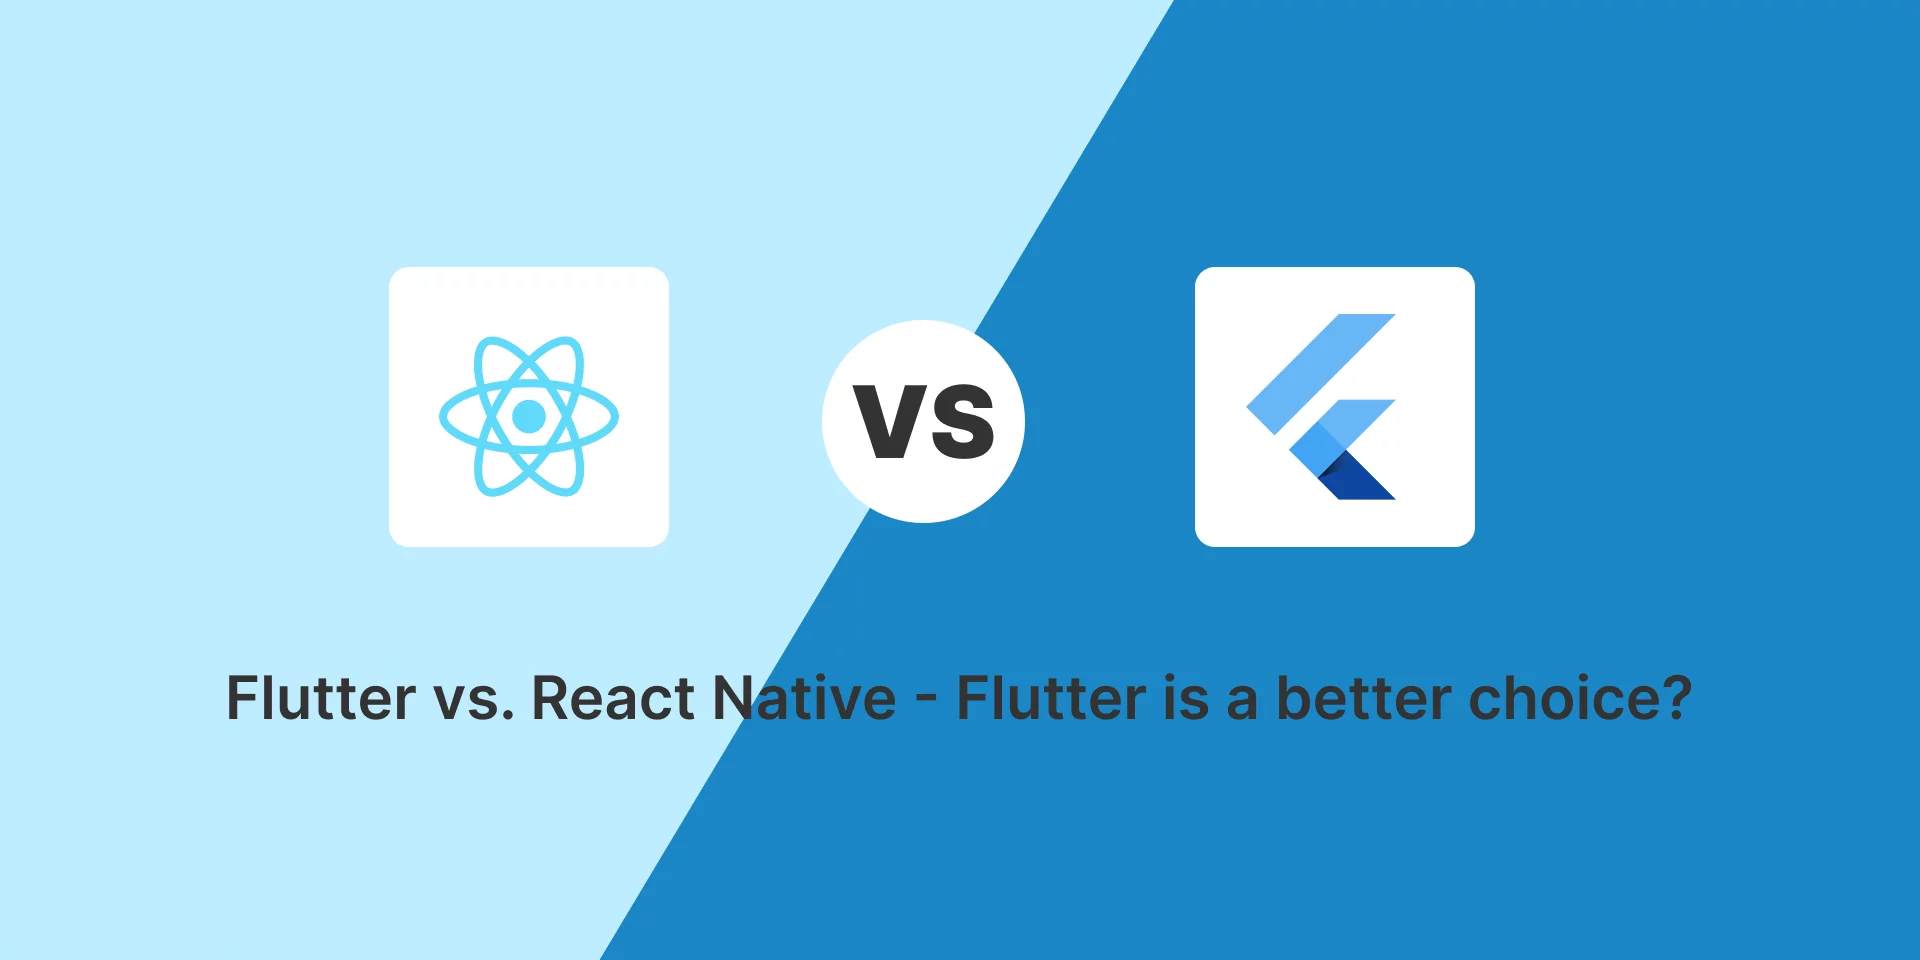 Flutter vs. React Native - Flutter is a better choice